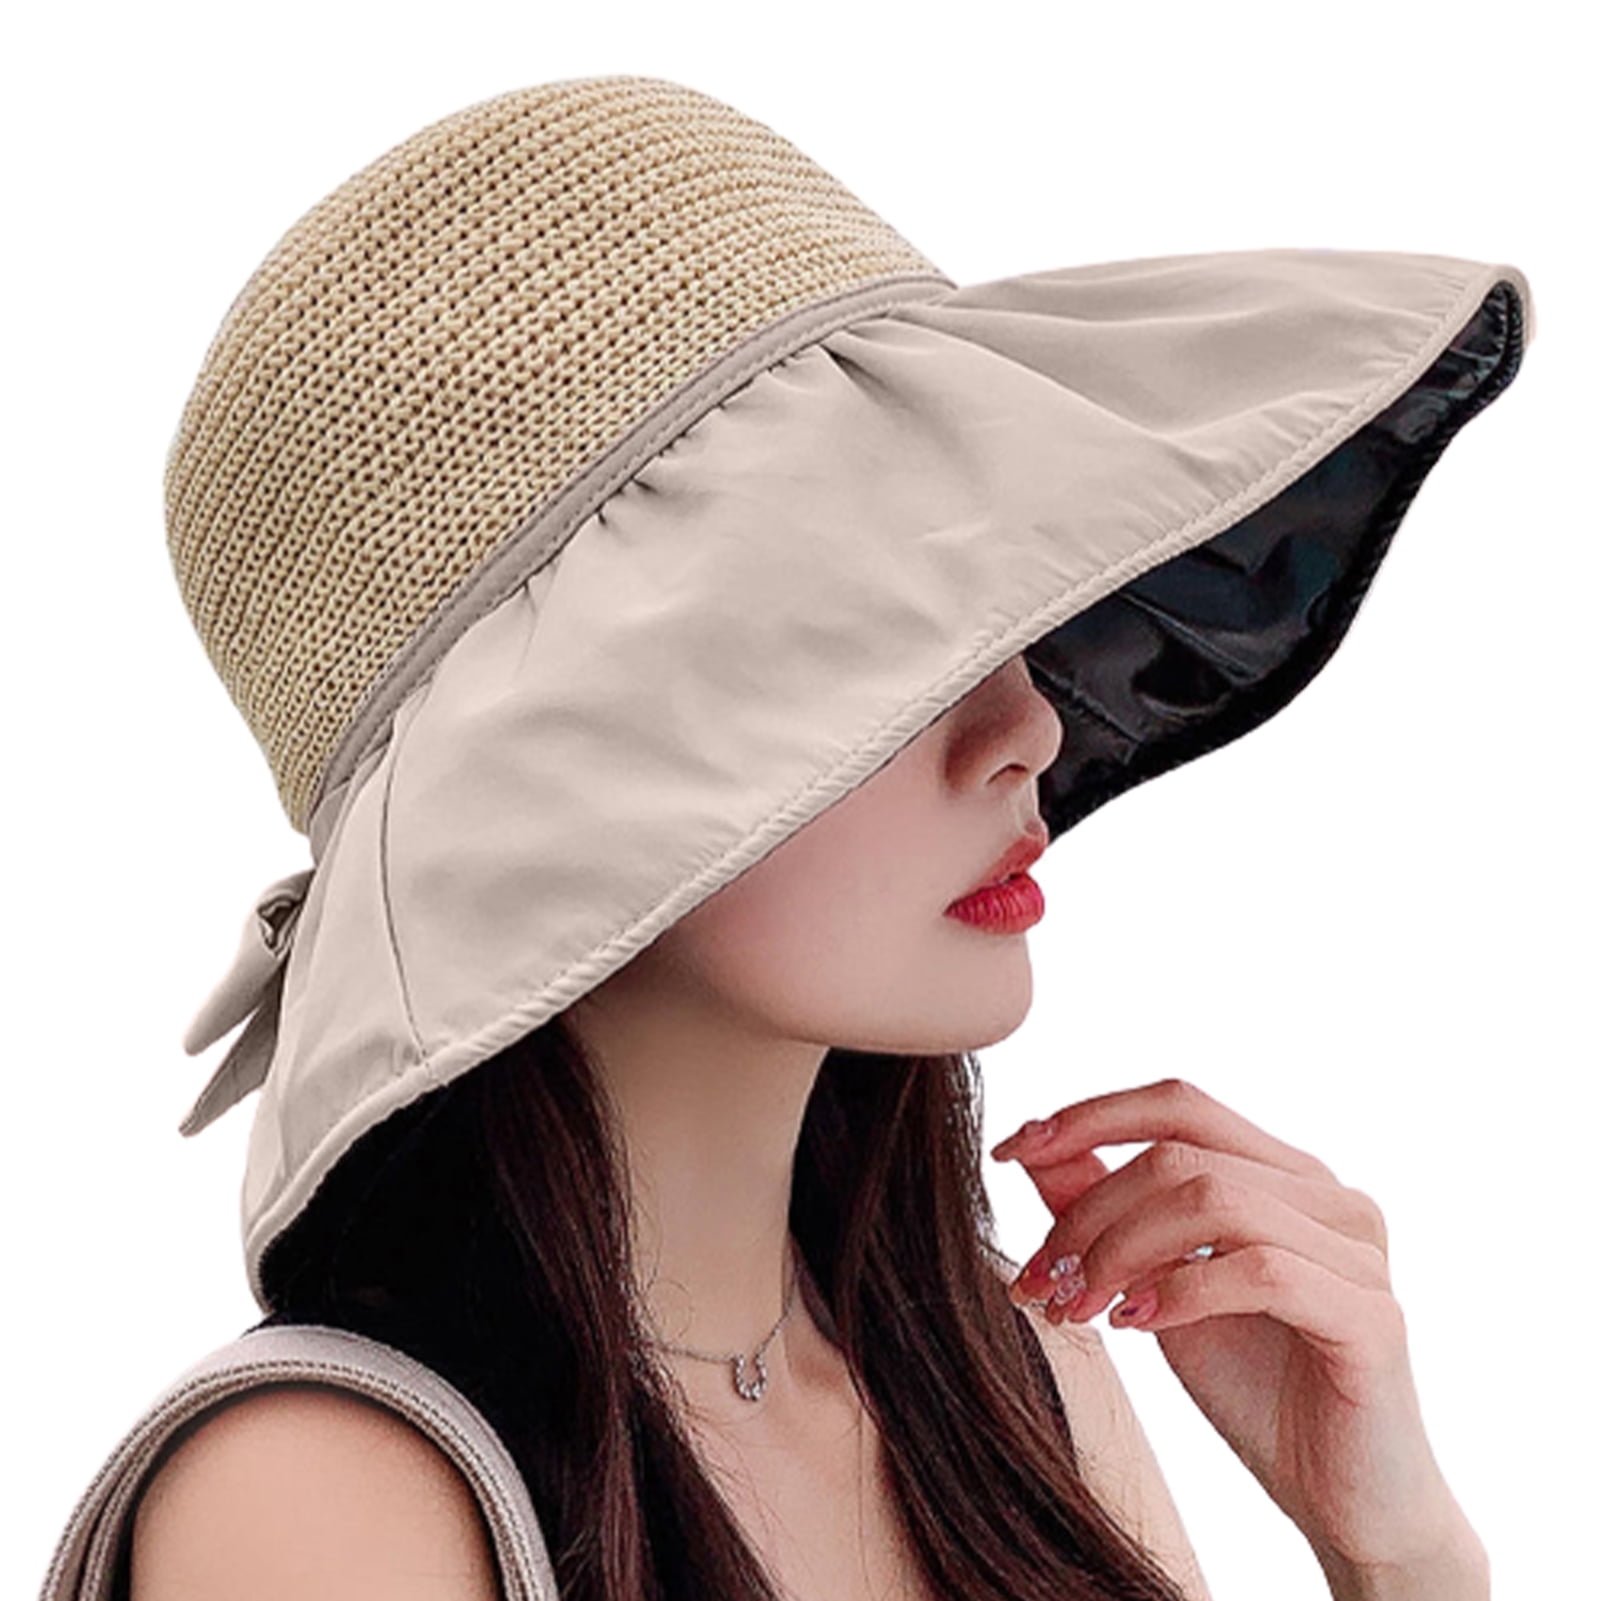 Gellwhu 3 Pieces Sun Hat For Women Outdoors